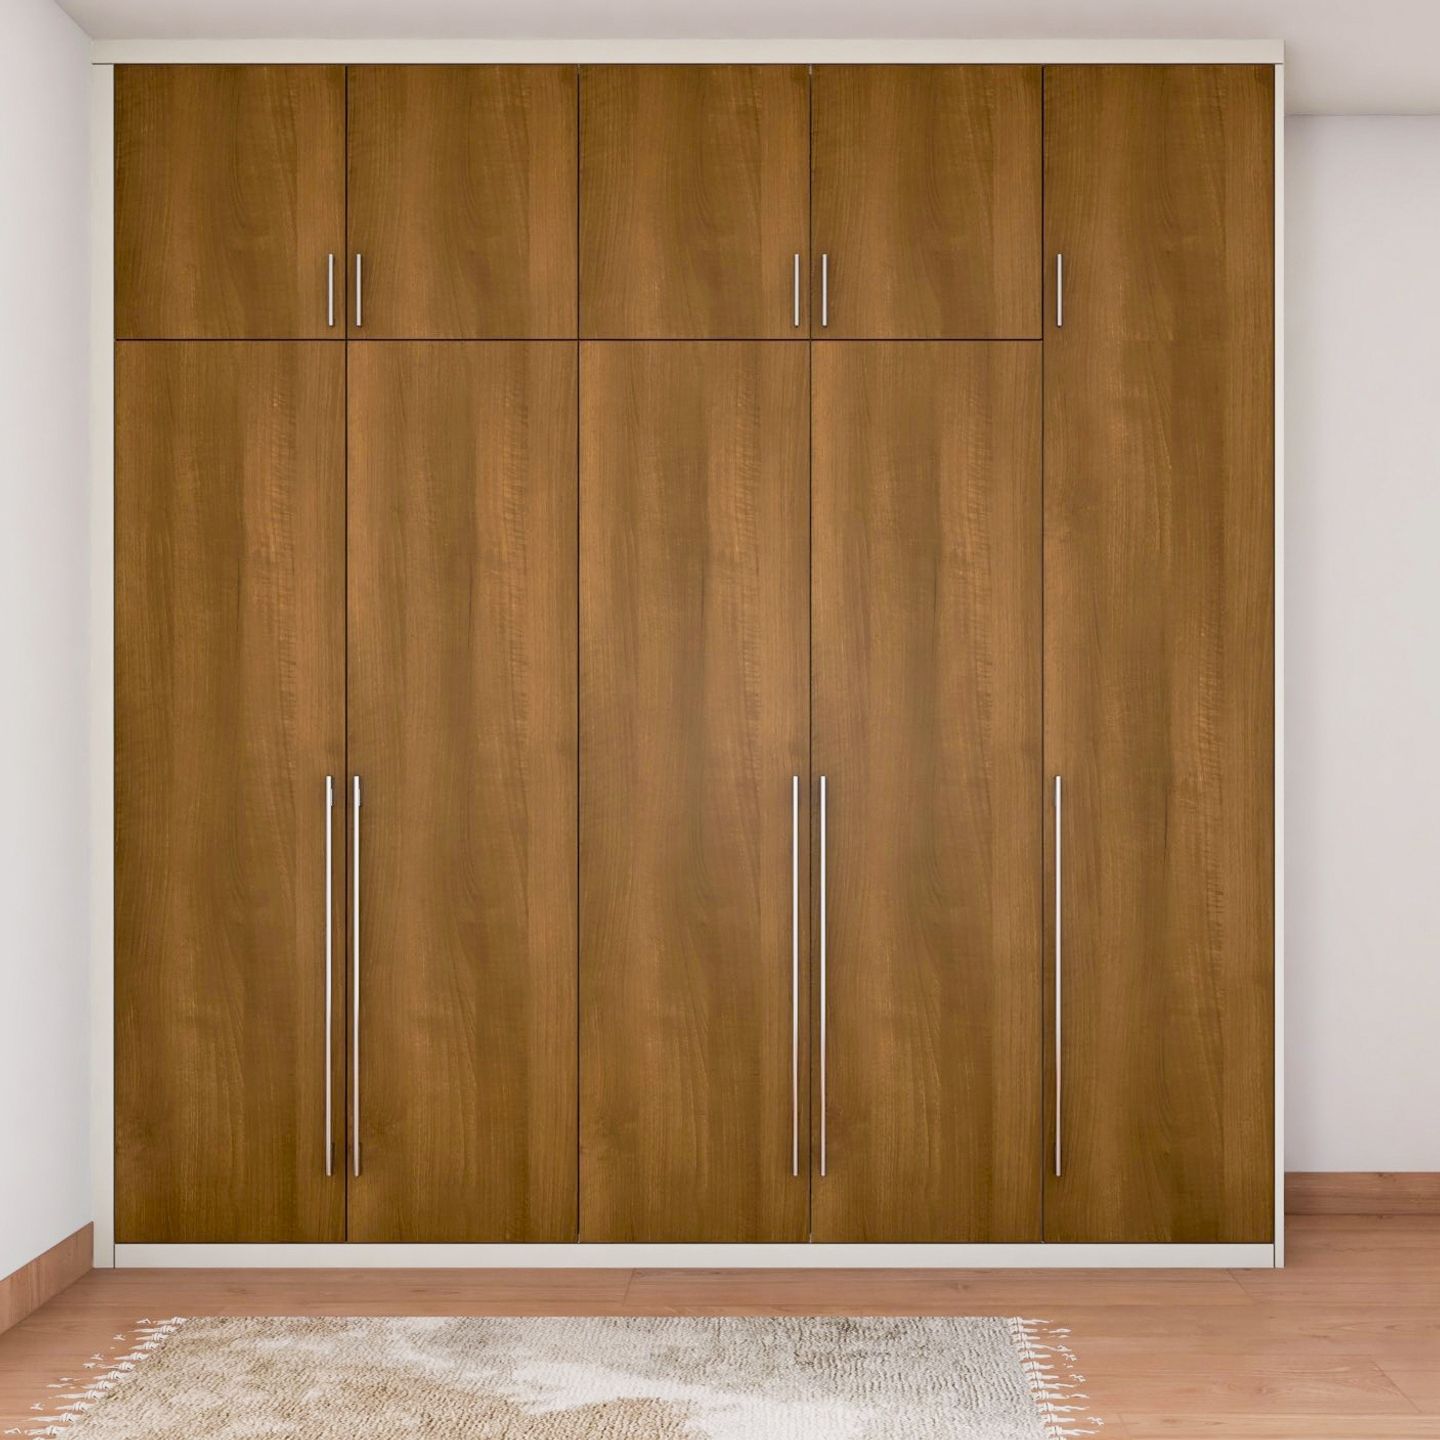 5-Door Wooden Swing Wardrobe Design With Loft Storage - Livspace